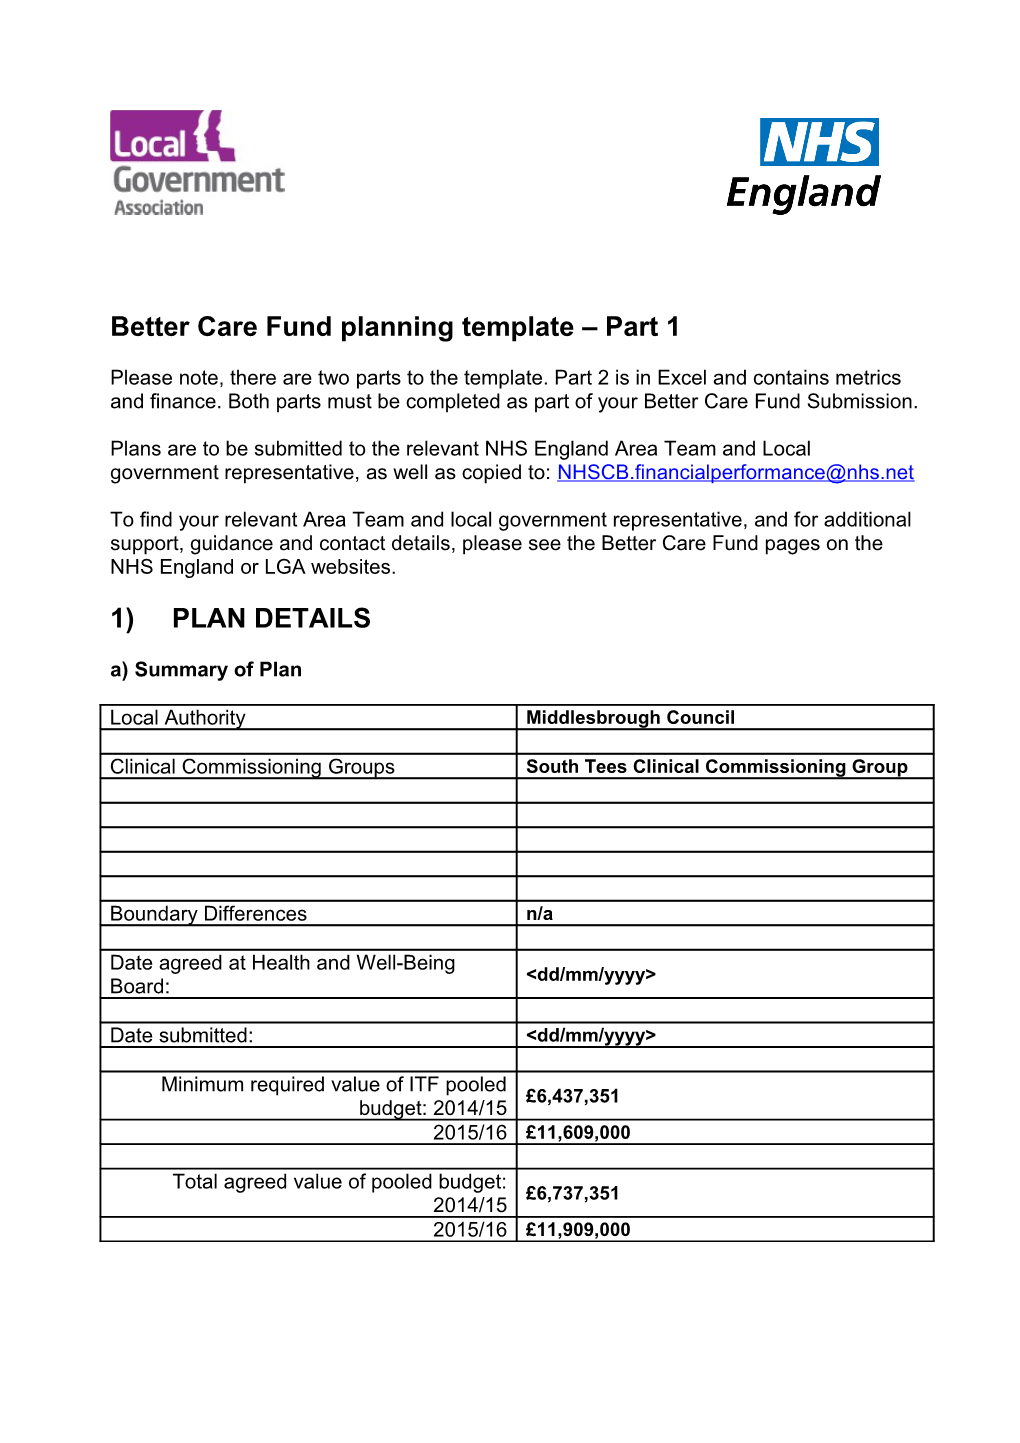 Better Care Fund Planningtemplate Part 1